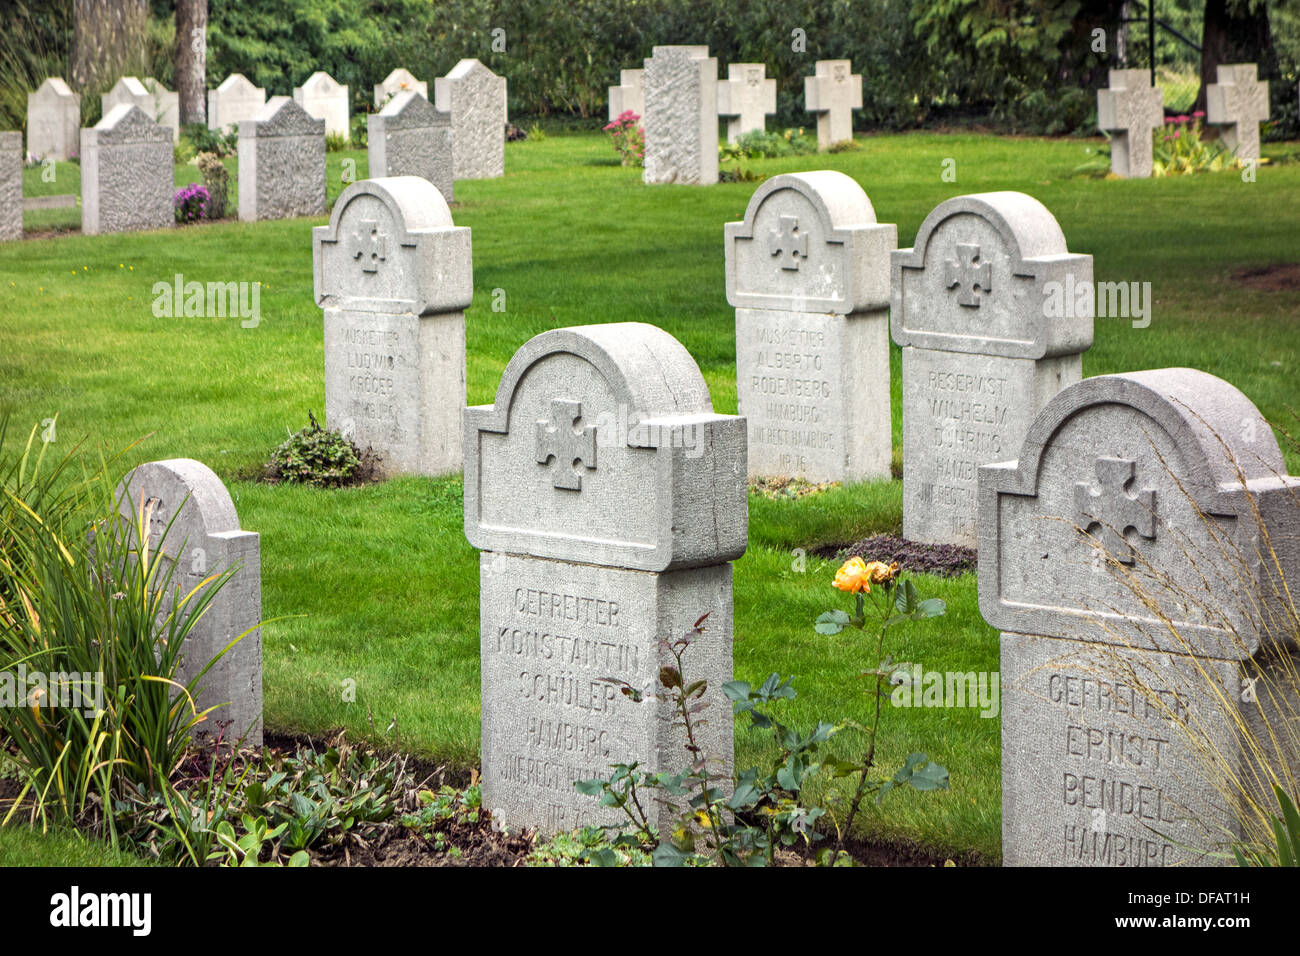 WW1 tombes allemandes au St Symphorien Commonwealth War Graves Commission cemetery, Saint-Symphorien près de Mons, Hainaut, Belgique Banque D'Images